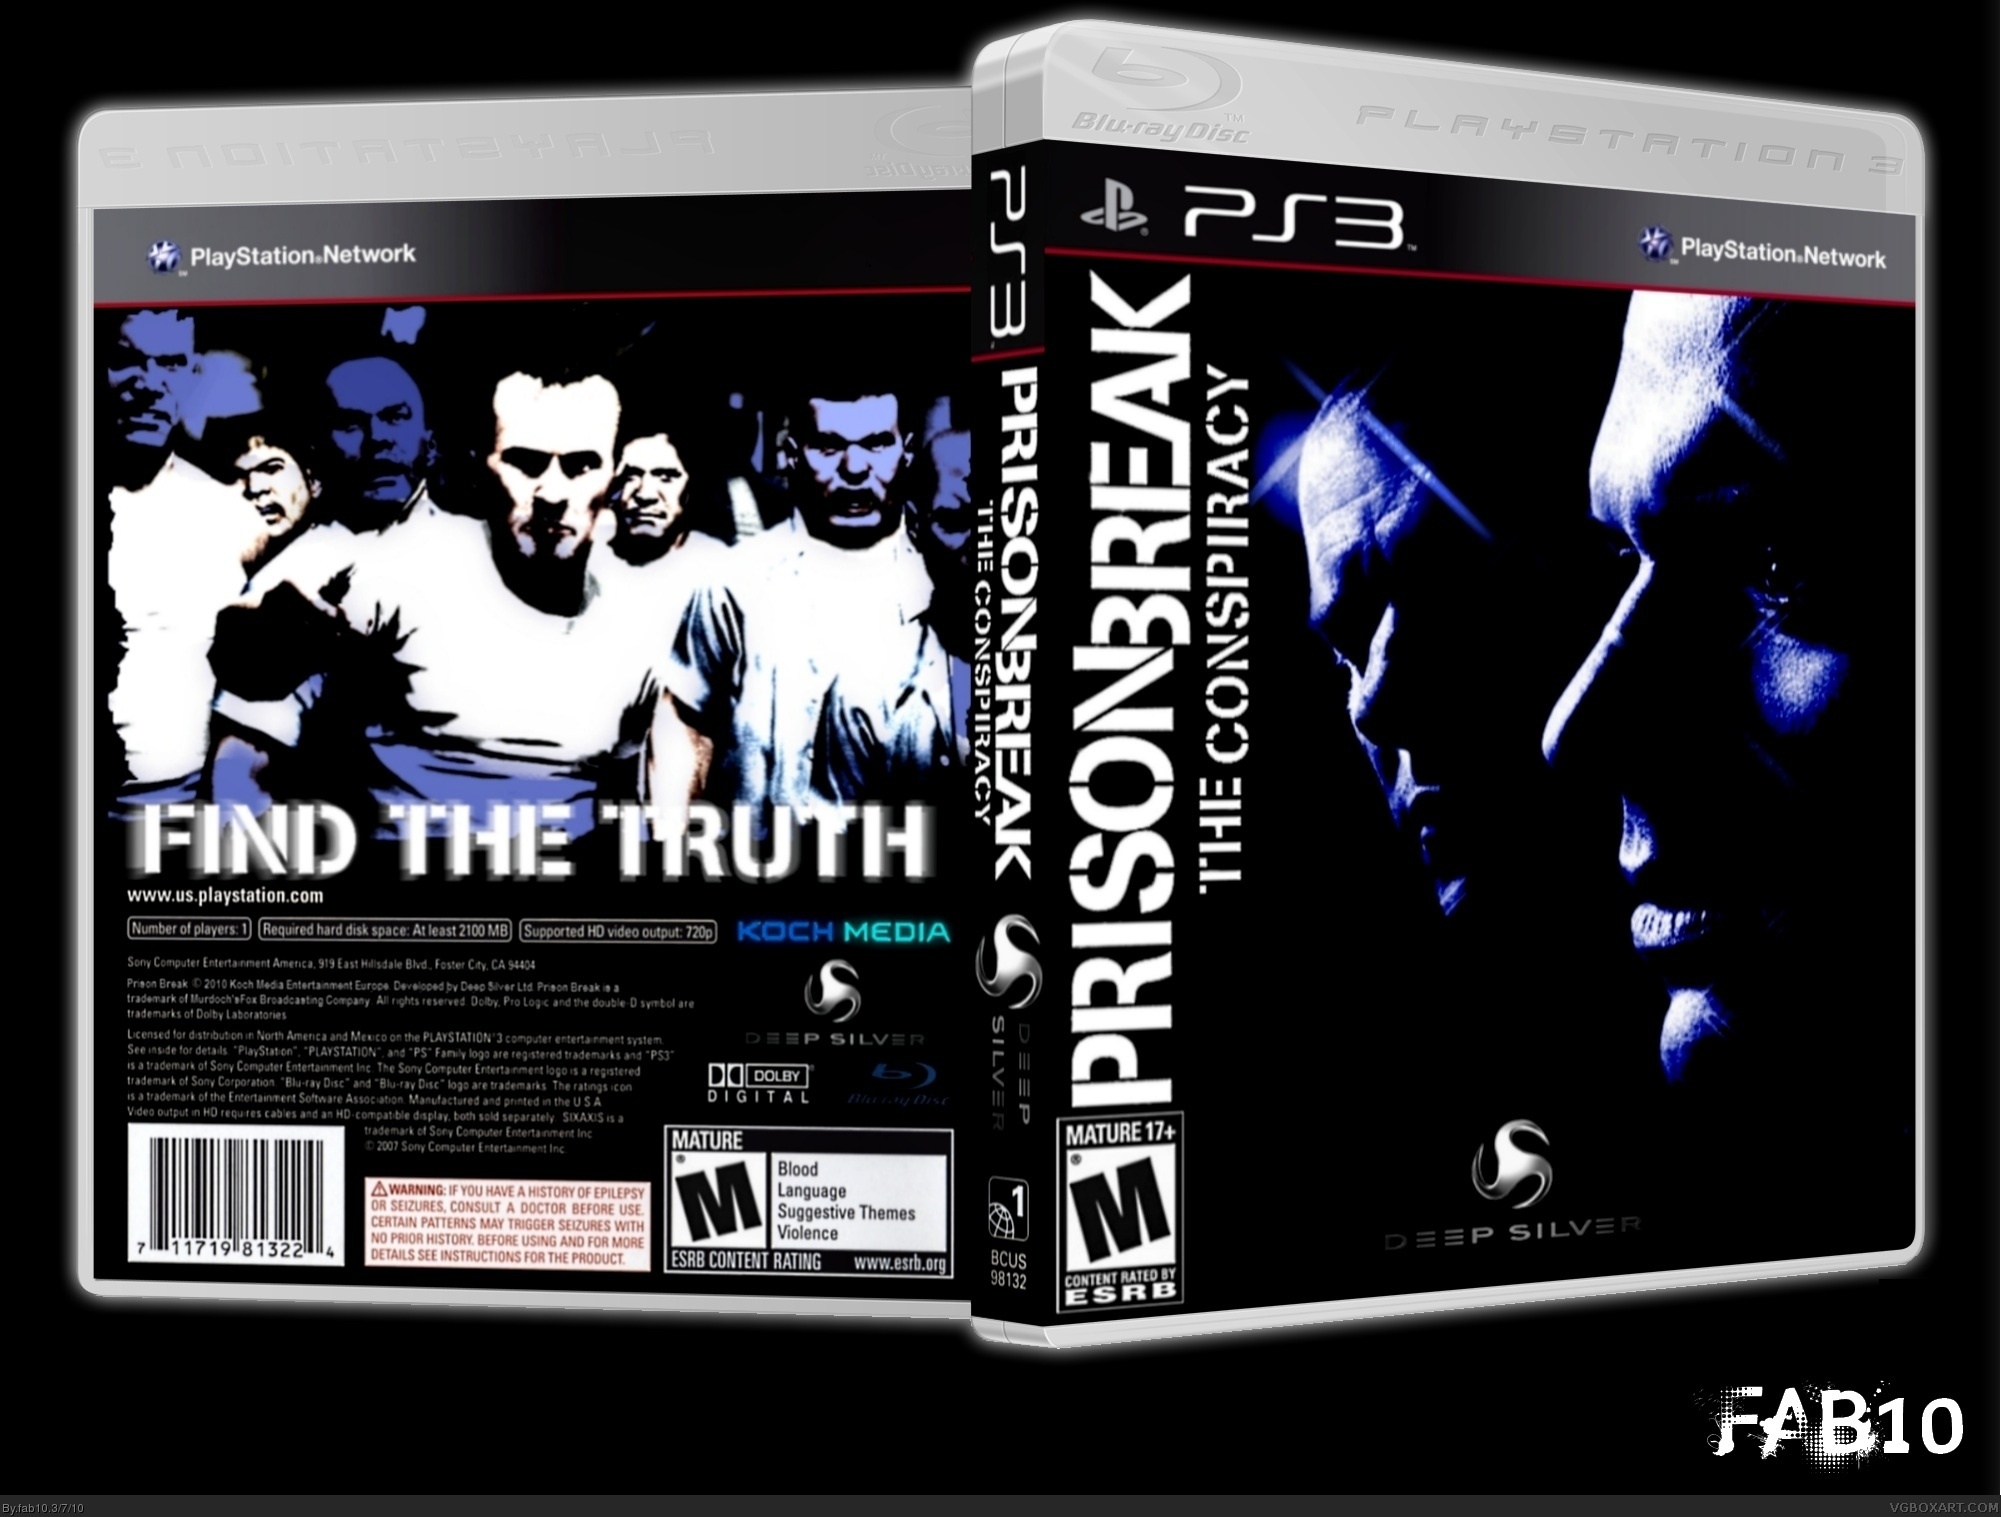 Prison Break: The Game box cover